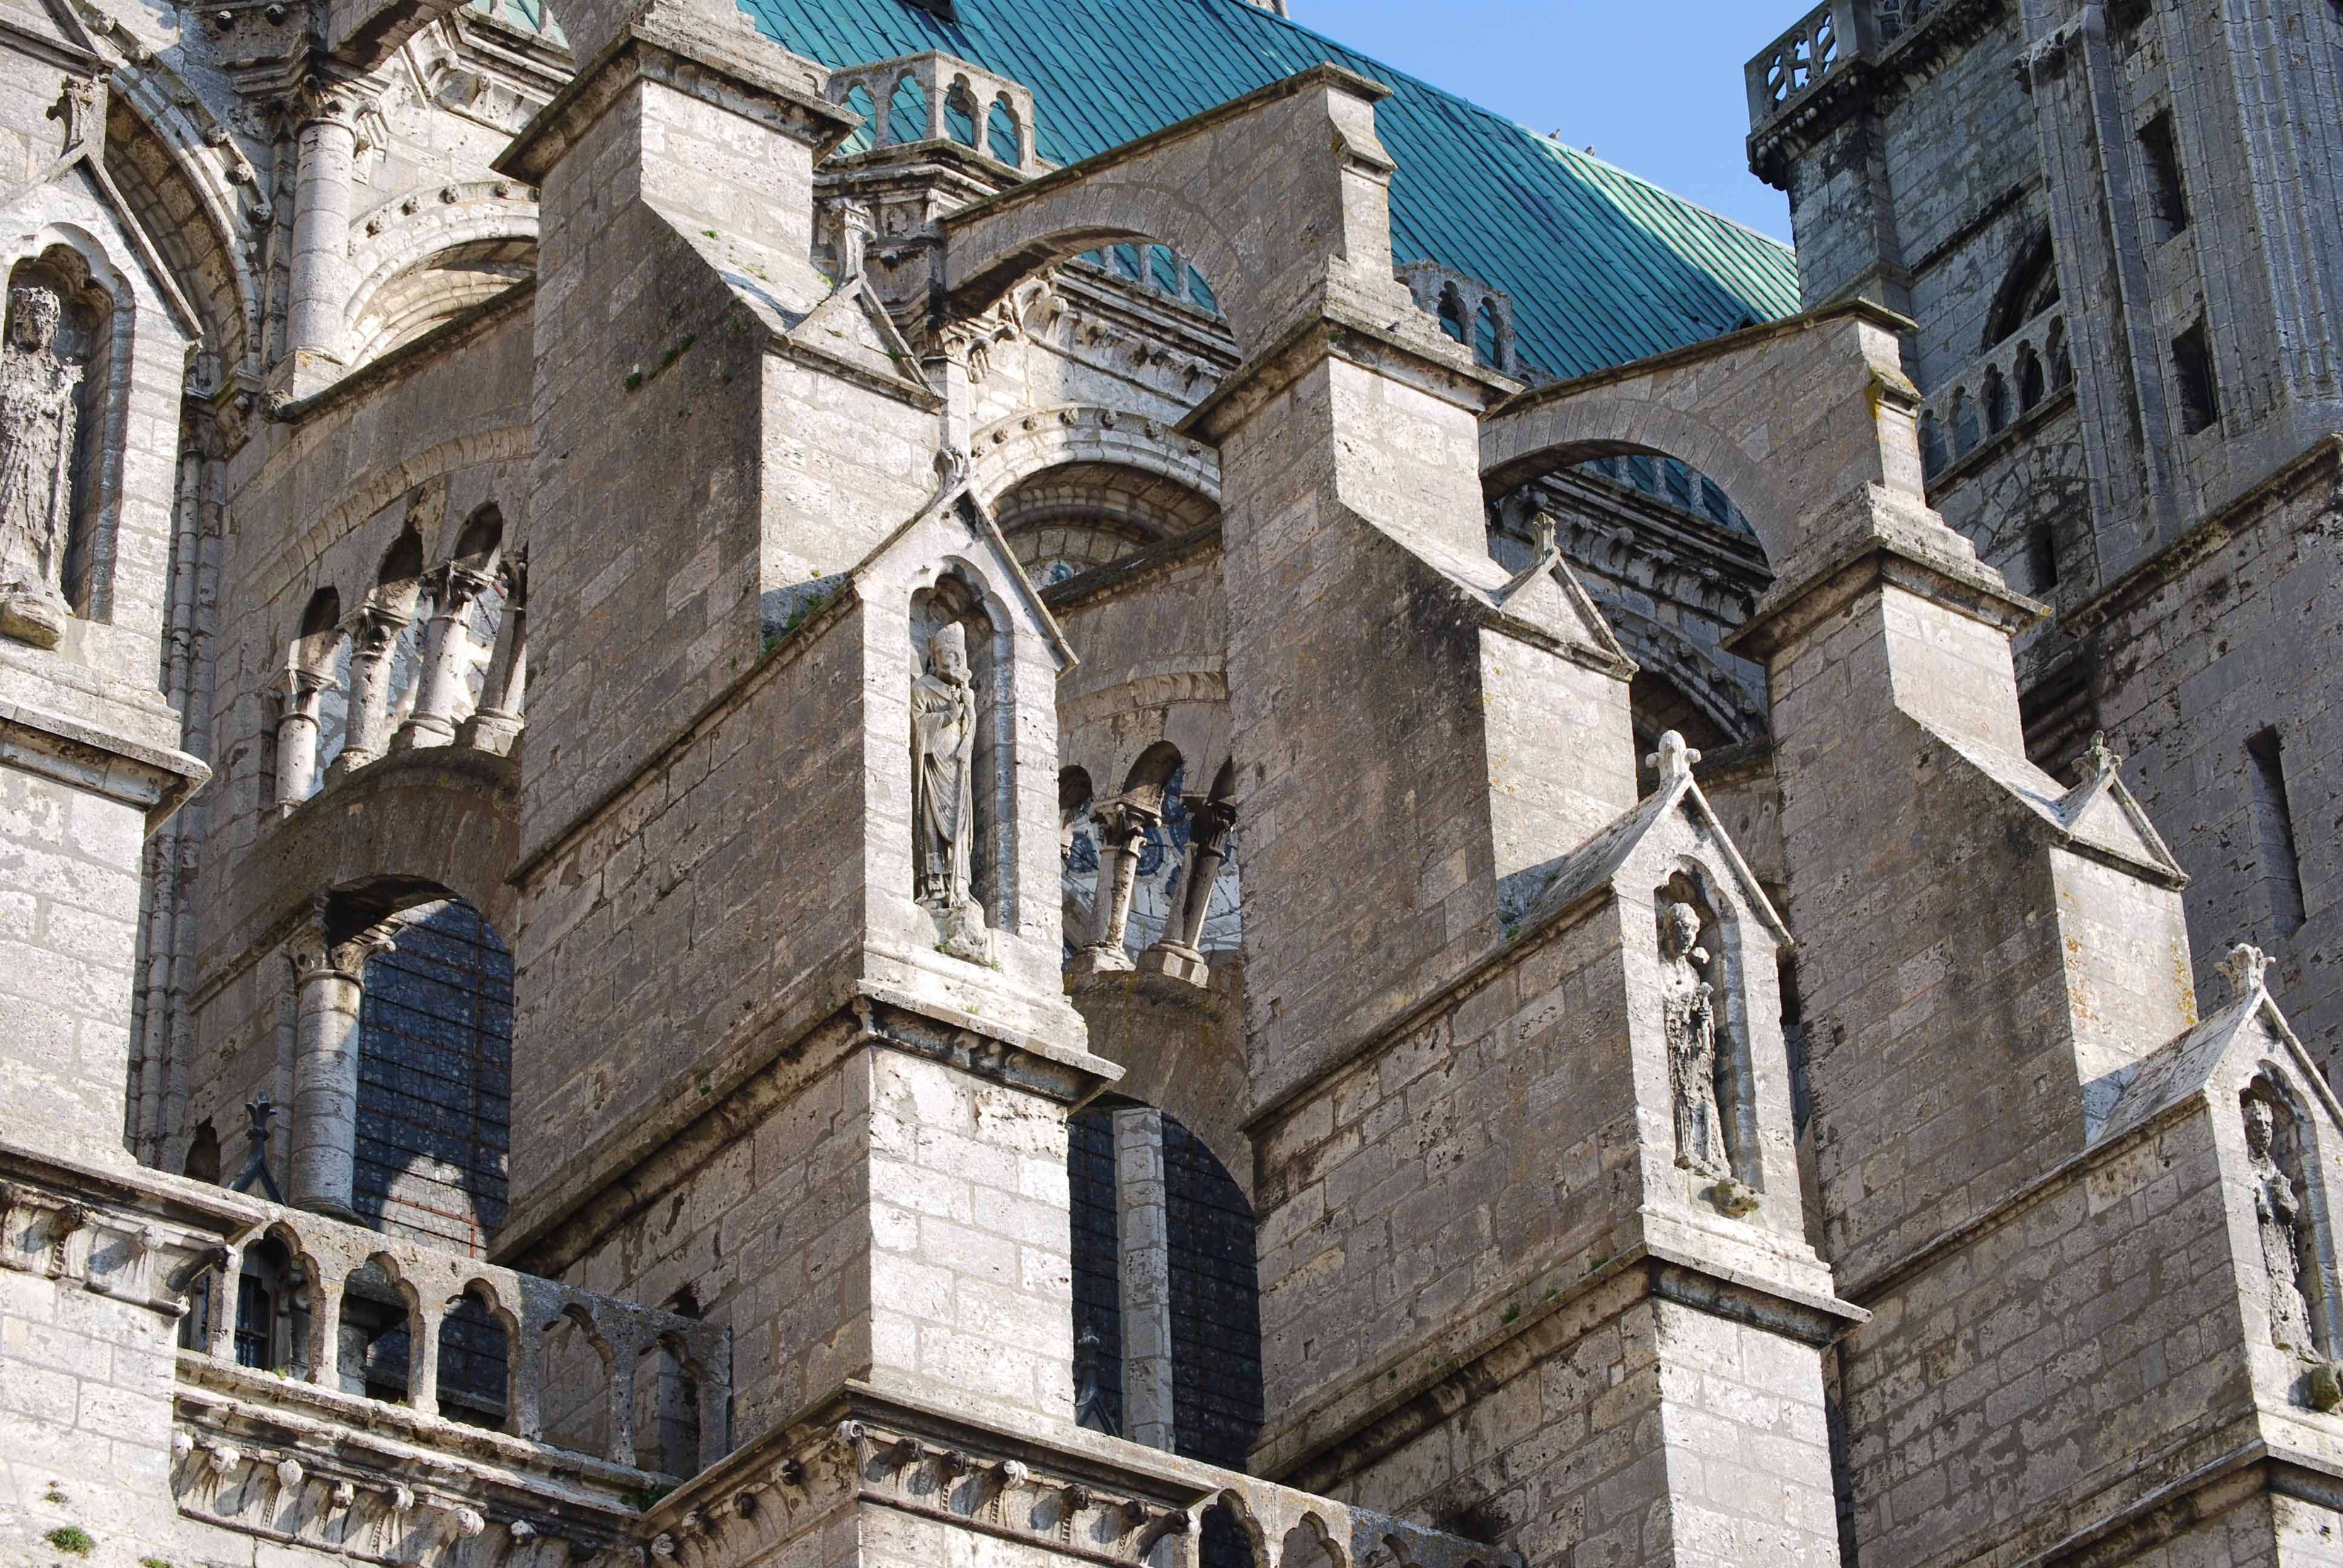 Arquitectura de la catedral de Chartres - Chartres: Arte, espiritualidad y esoterismo. (9)